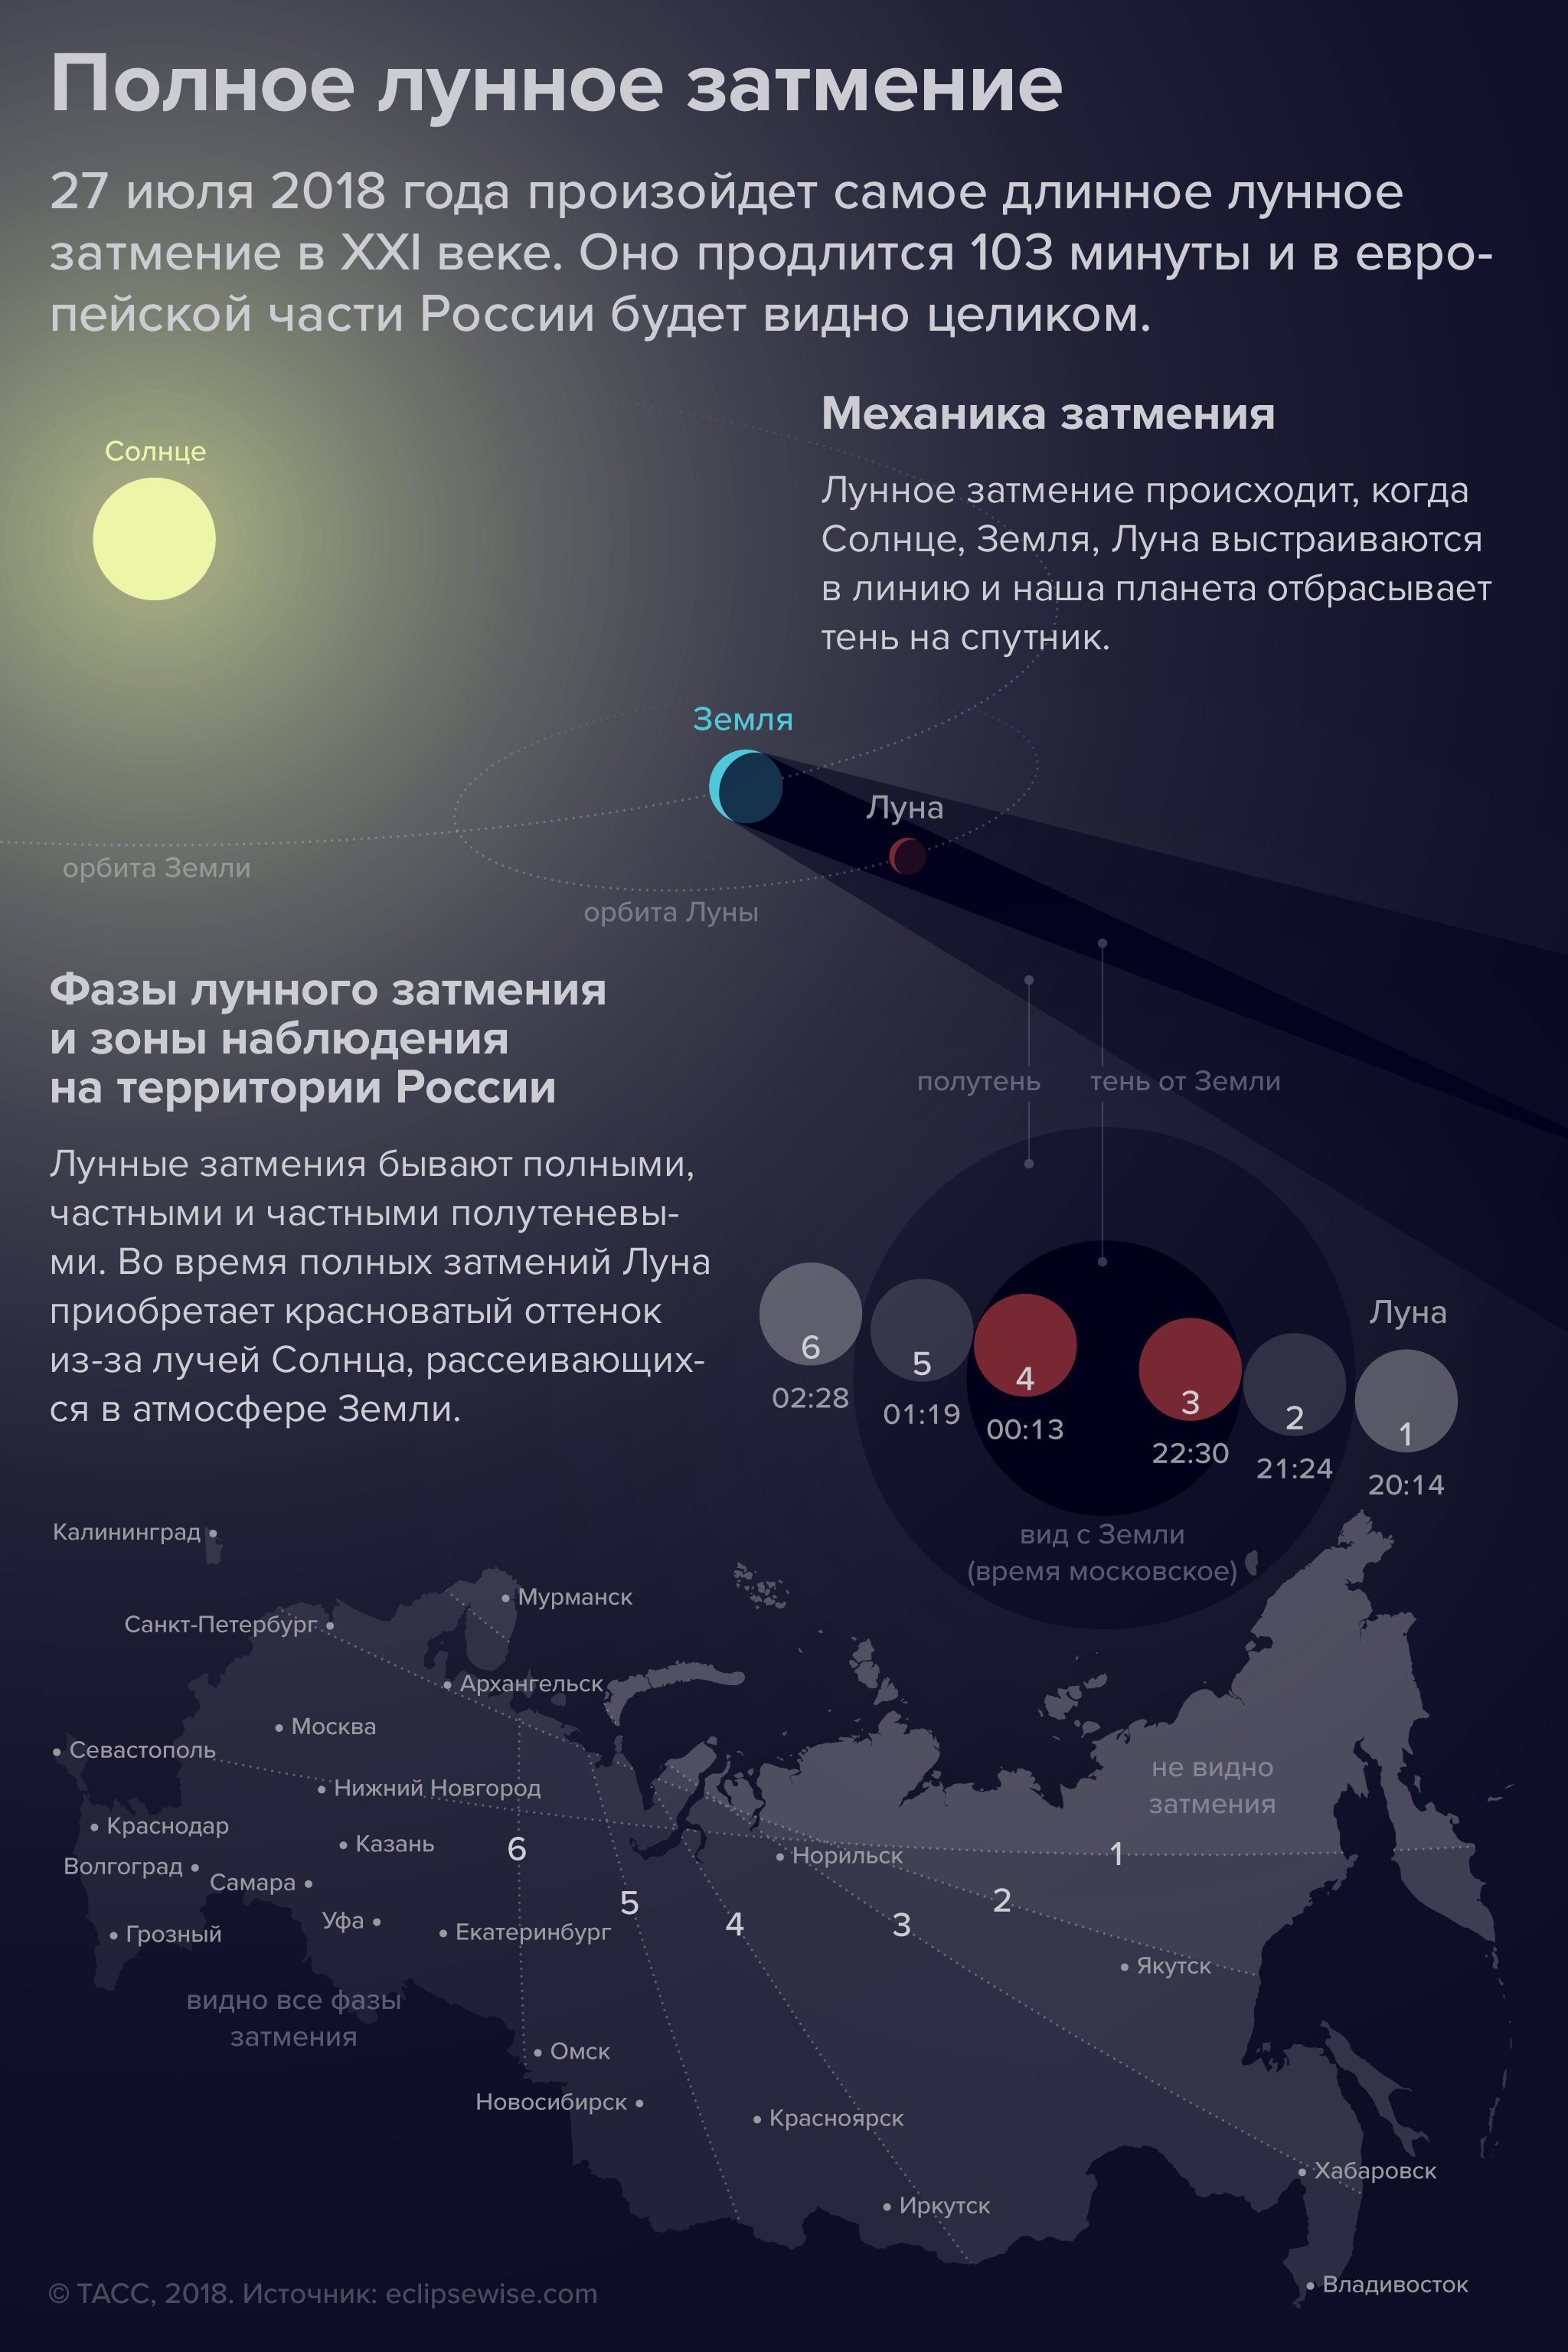 Затмения 21 века в россии. Лунное затмение. Полное лунное затмение в России. Затмение в 2018 году. 27 Июля 2018 лунное затмение.